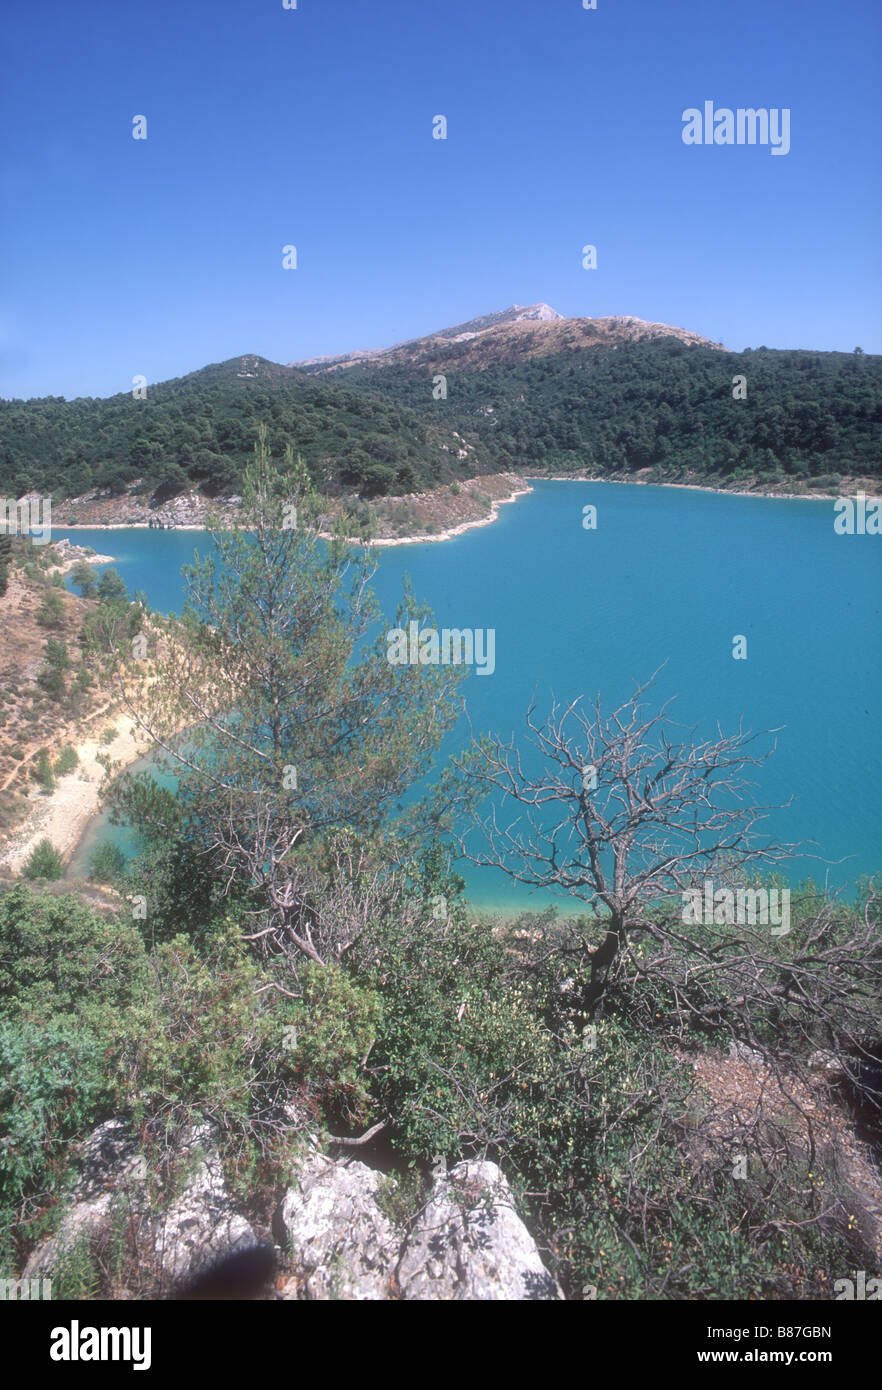 Lac du bimont Banque de photographies et d'images à haute résolution - Alamy